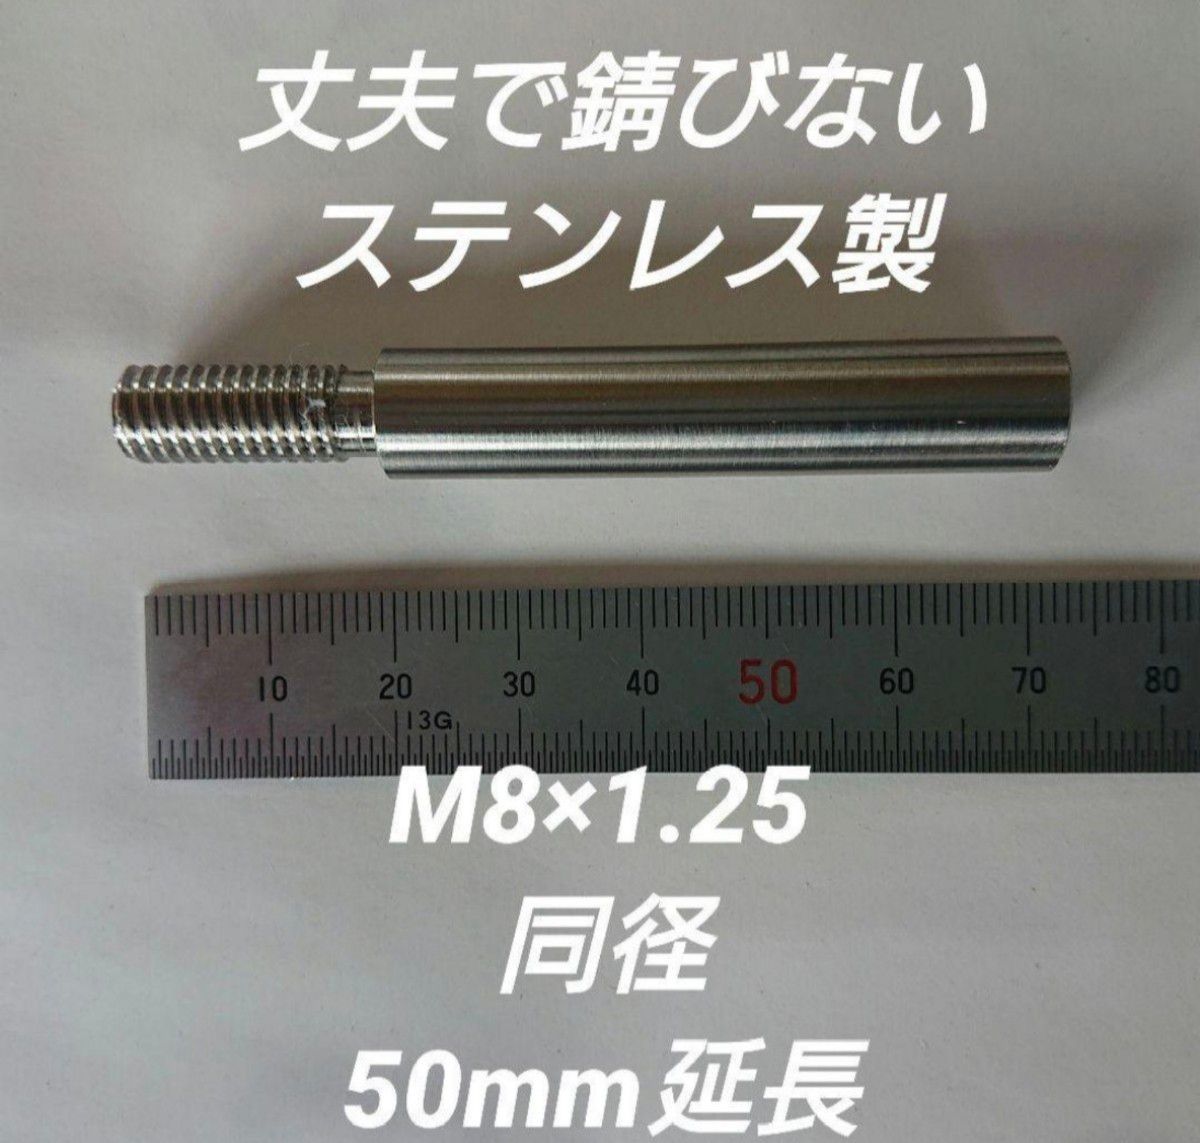 シフトノブ延長アダプター 50mm延長 M8×1.25